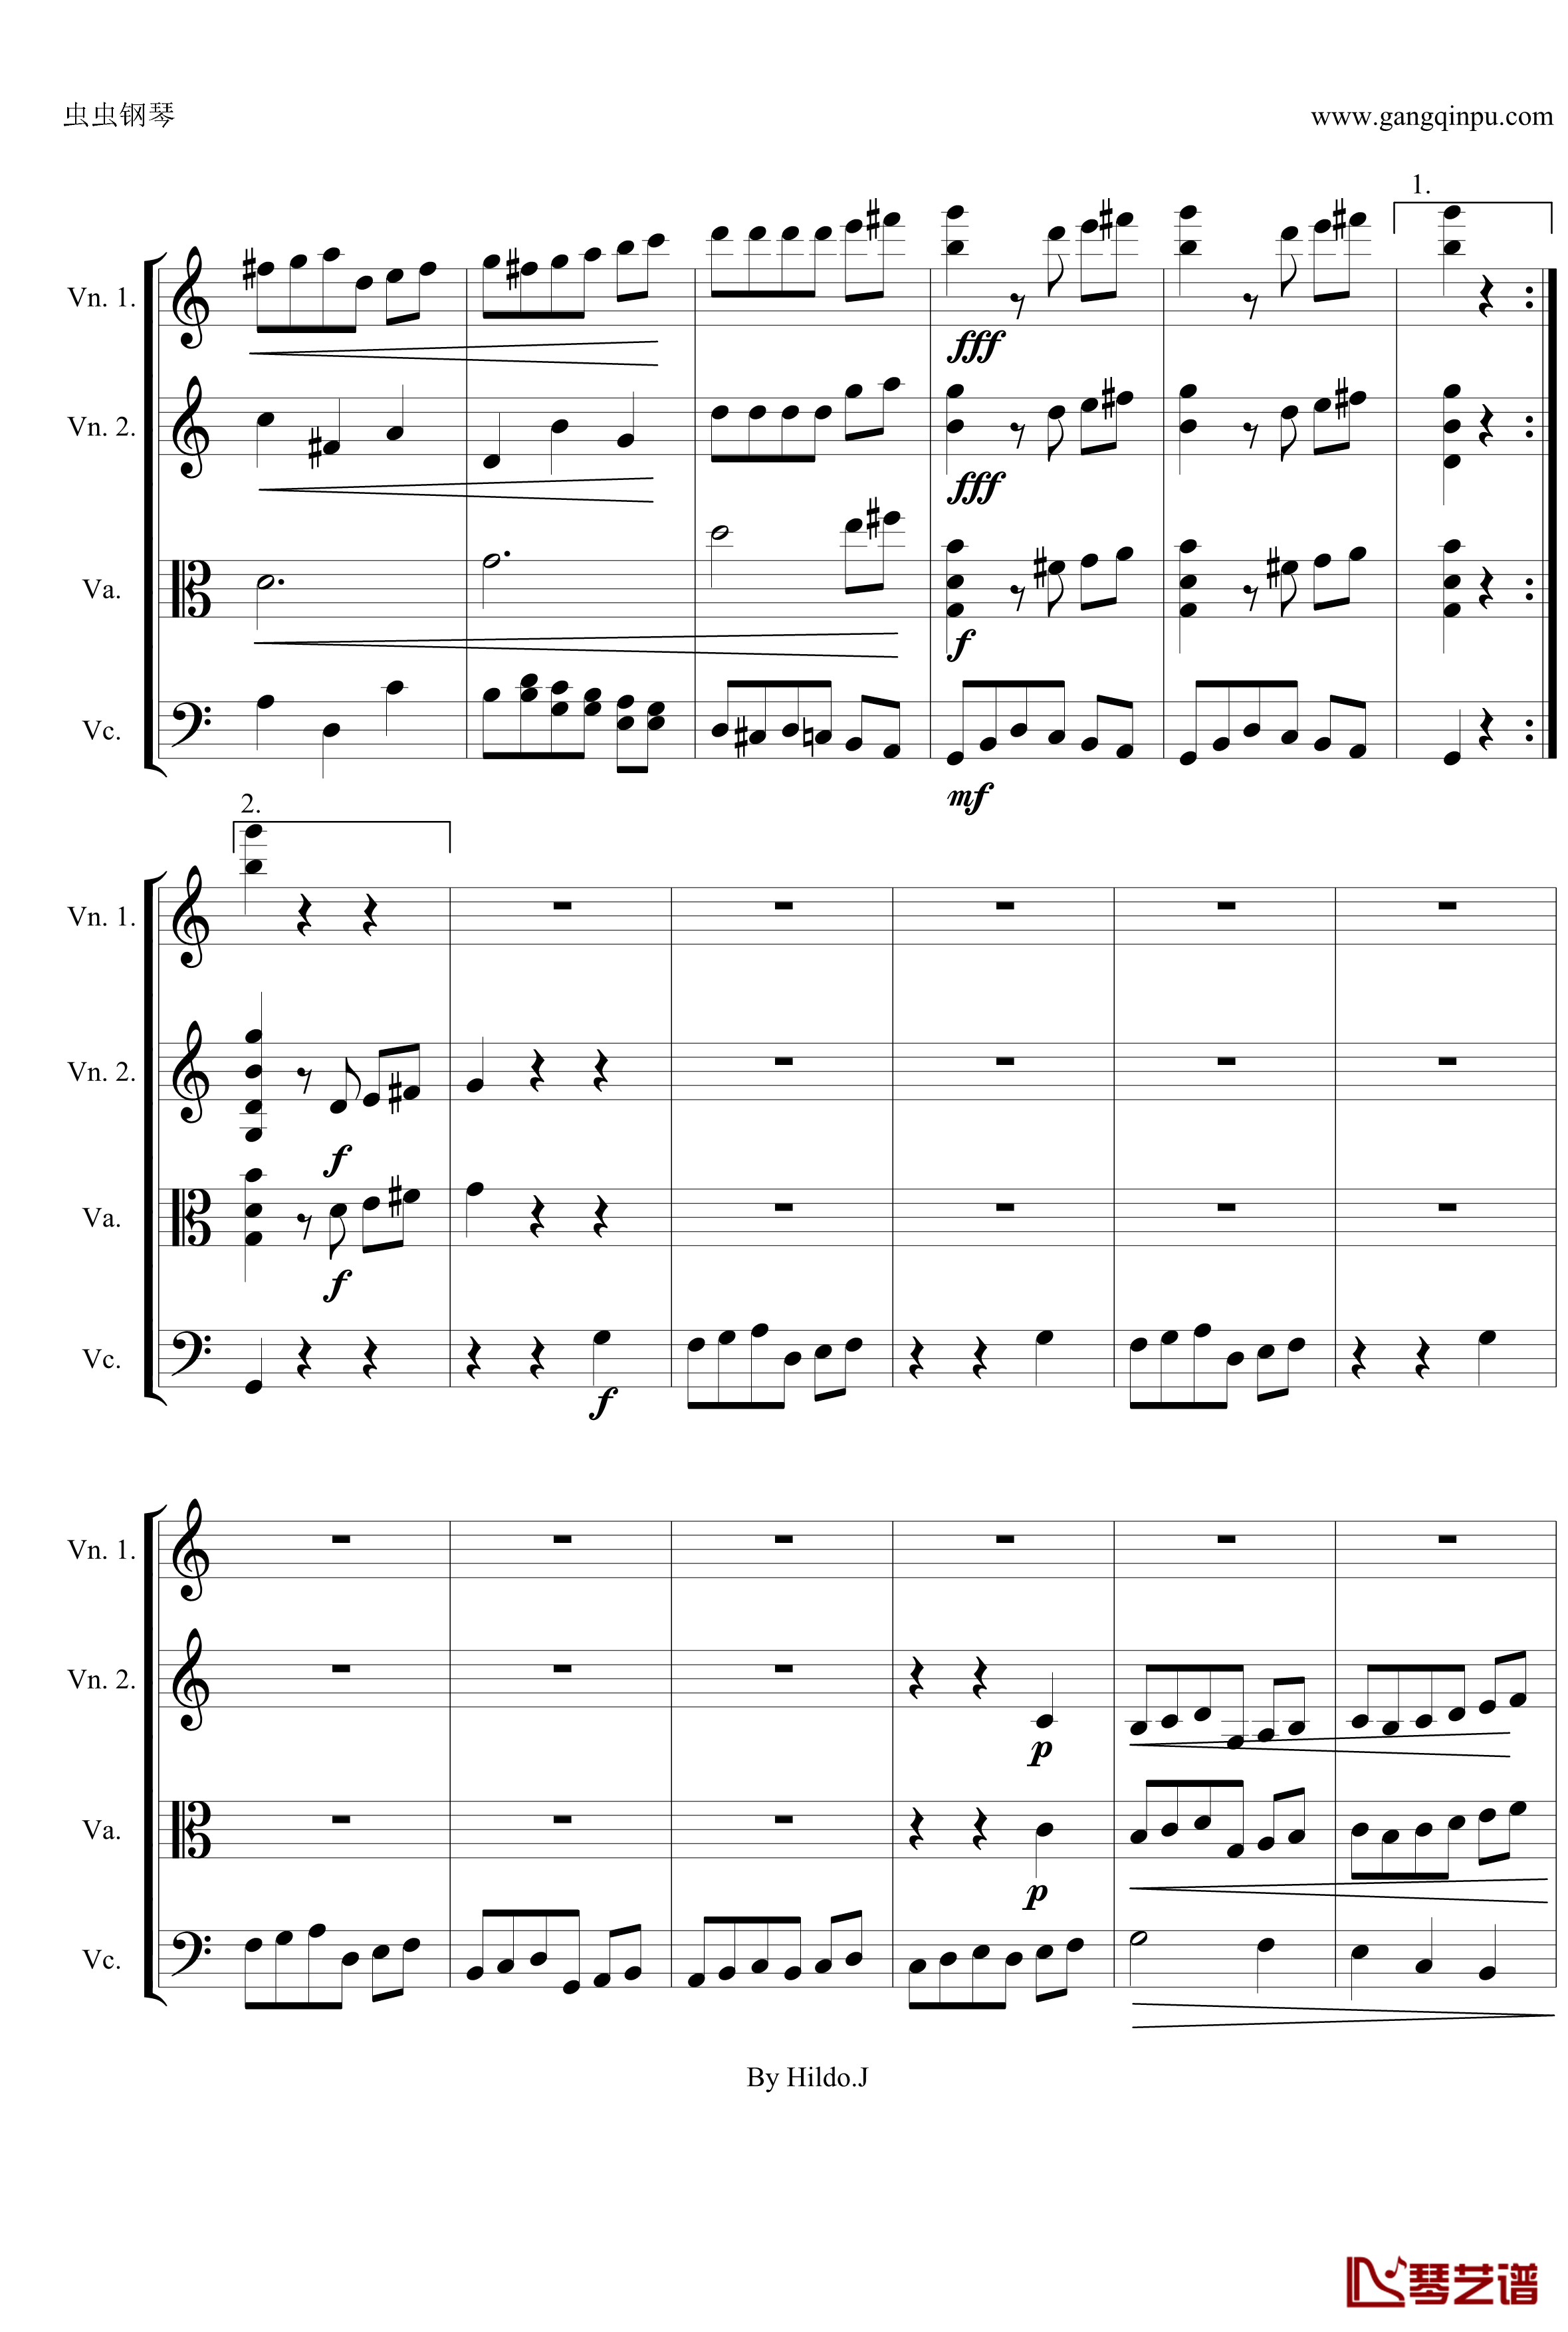 命运交响曲第三乐章钢琴谱-弦乐版-贝多芬-beethoven12